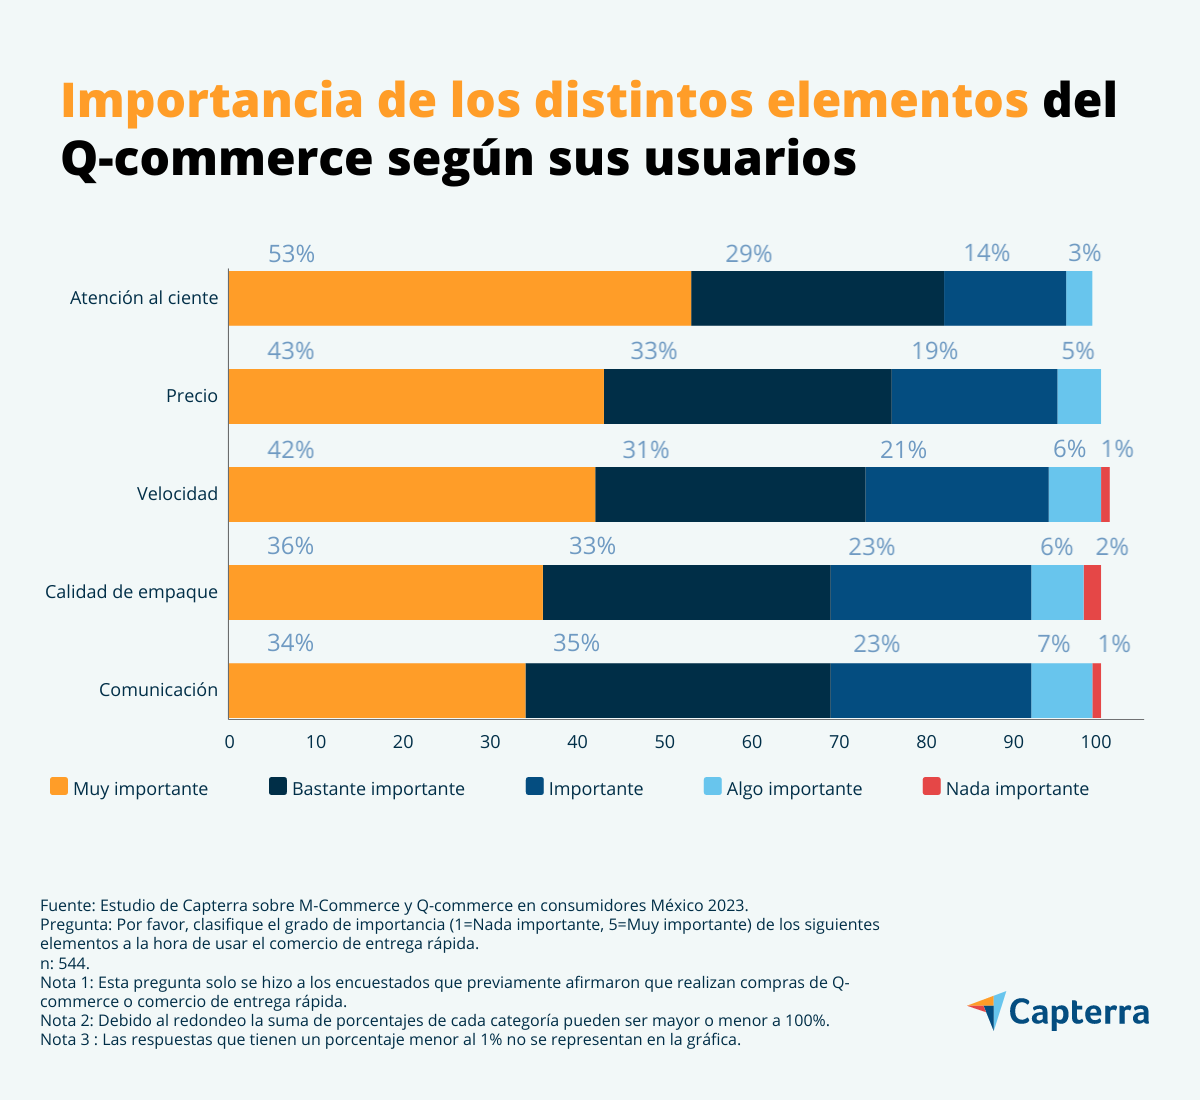 Los usuarios de comercio rápido en México consideran la atención al cliente como el elemento más importante de este servicio.